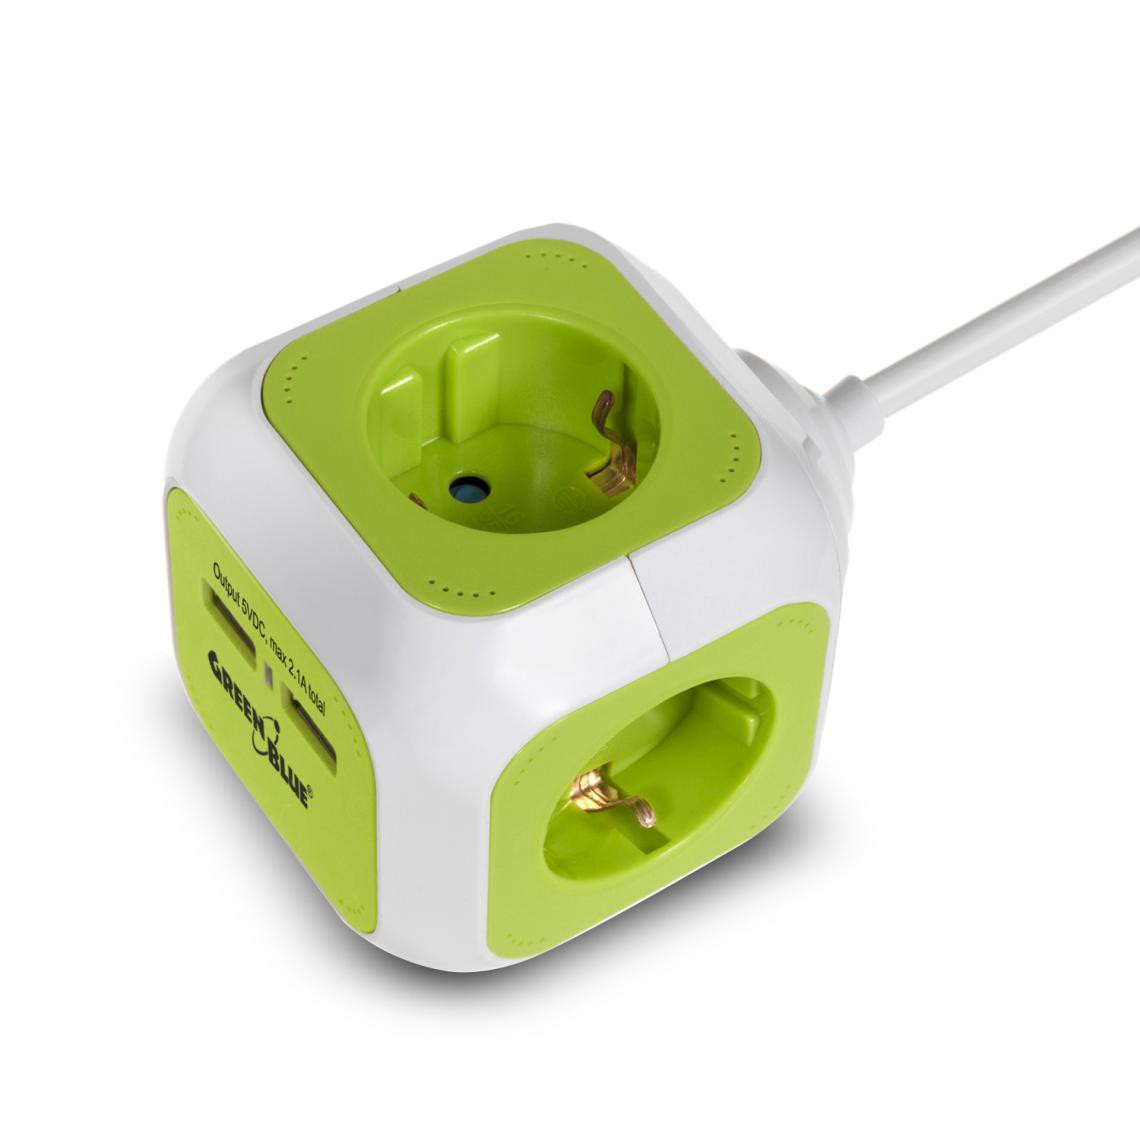 Greenblue - Prise d'alimentation MagicCube version allemande 2 entrées USB 1,4m GreenBlue GB118G - Accessoires alimentation